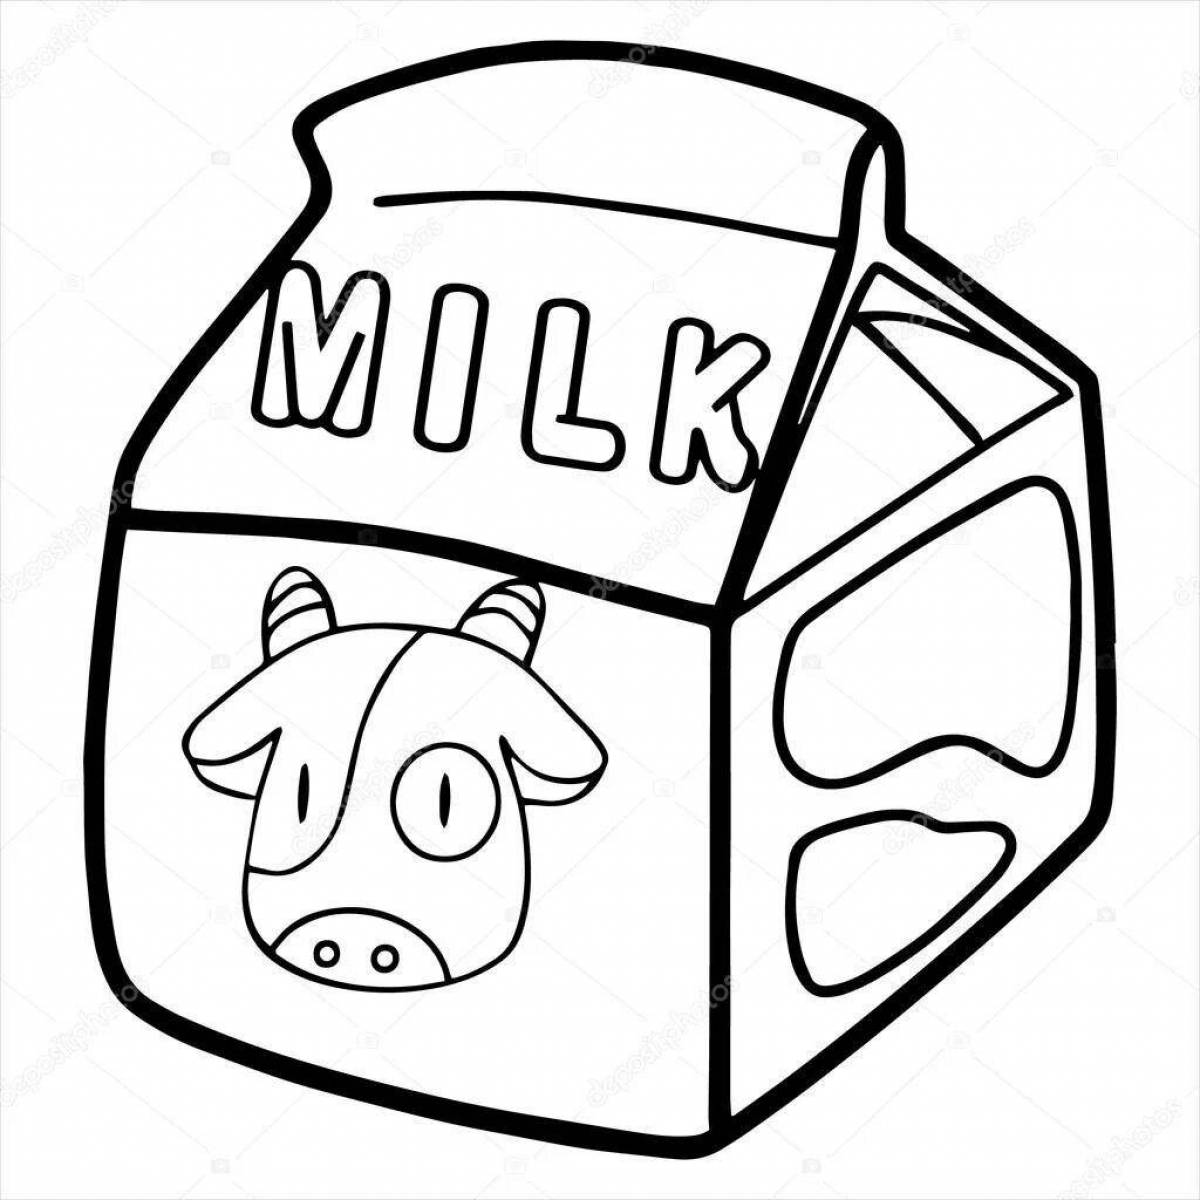 Fun milk coloring